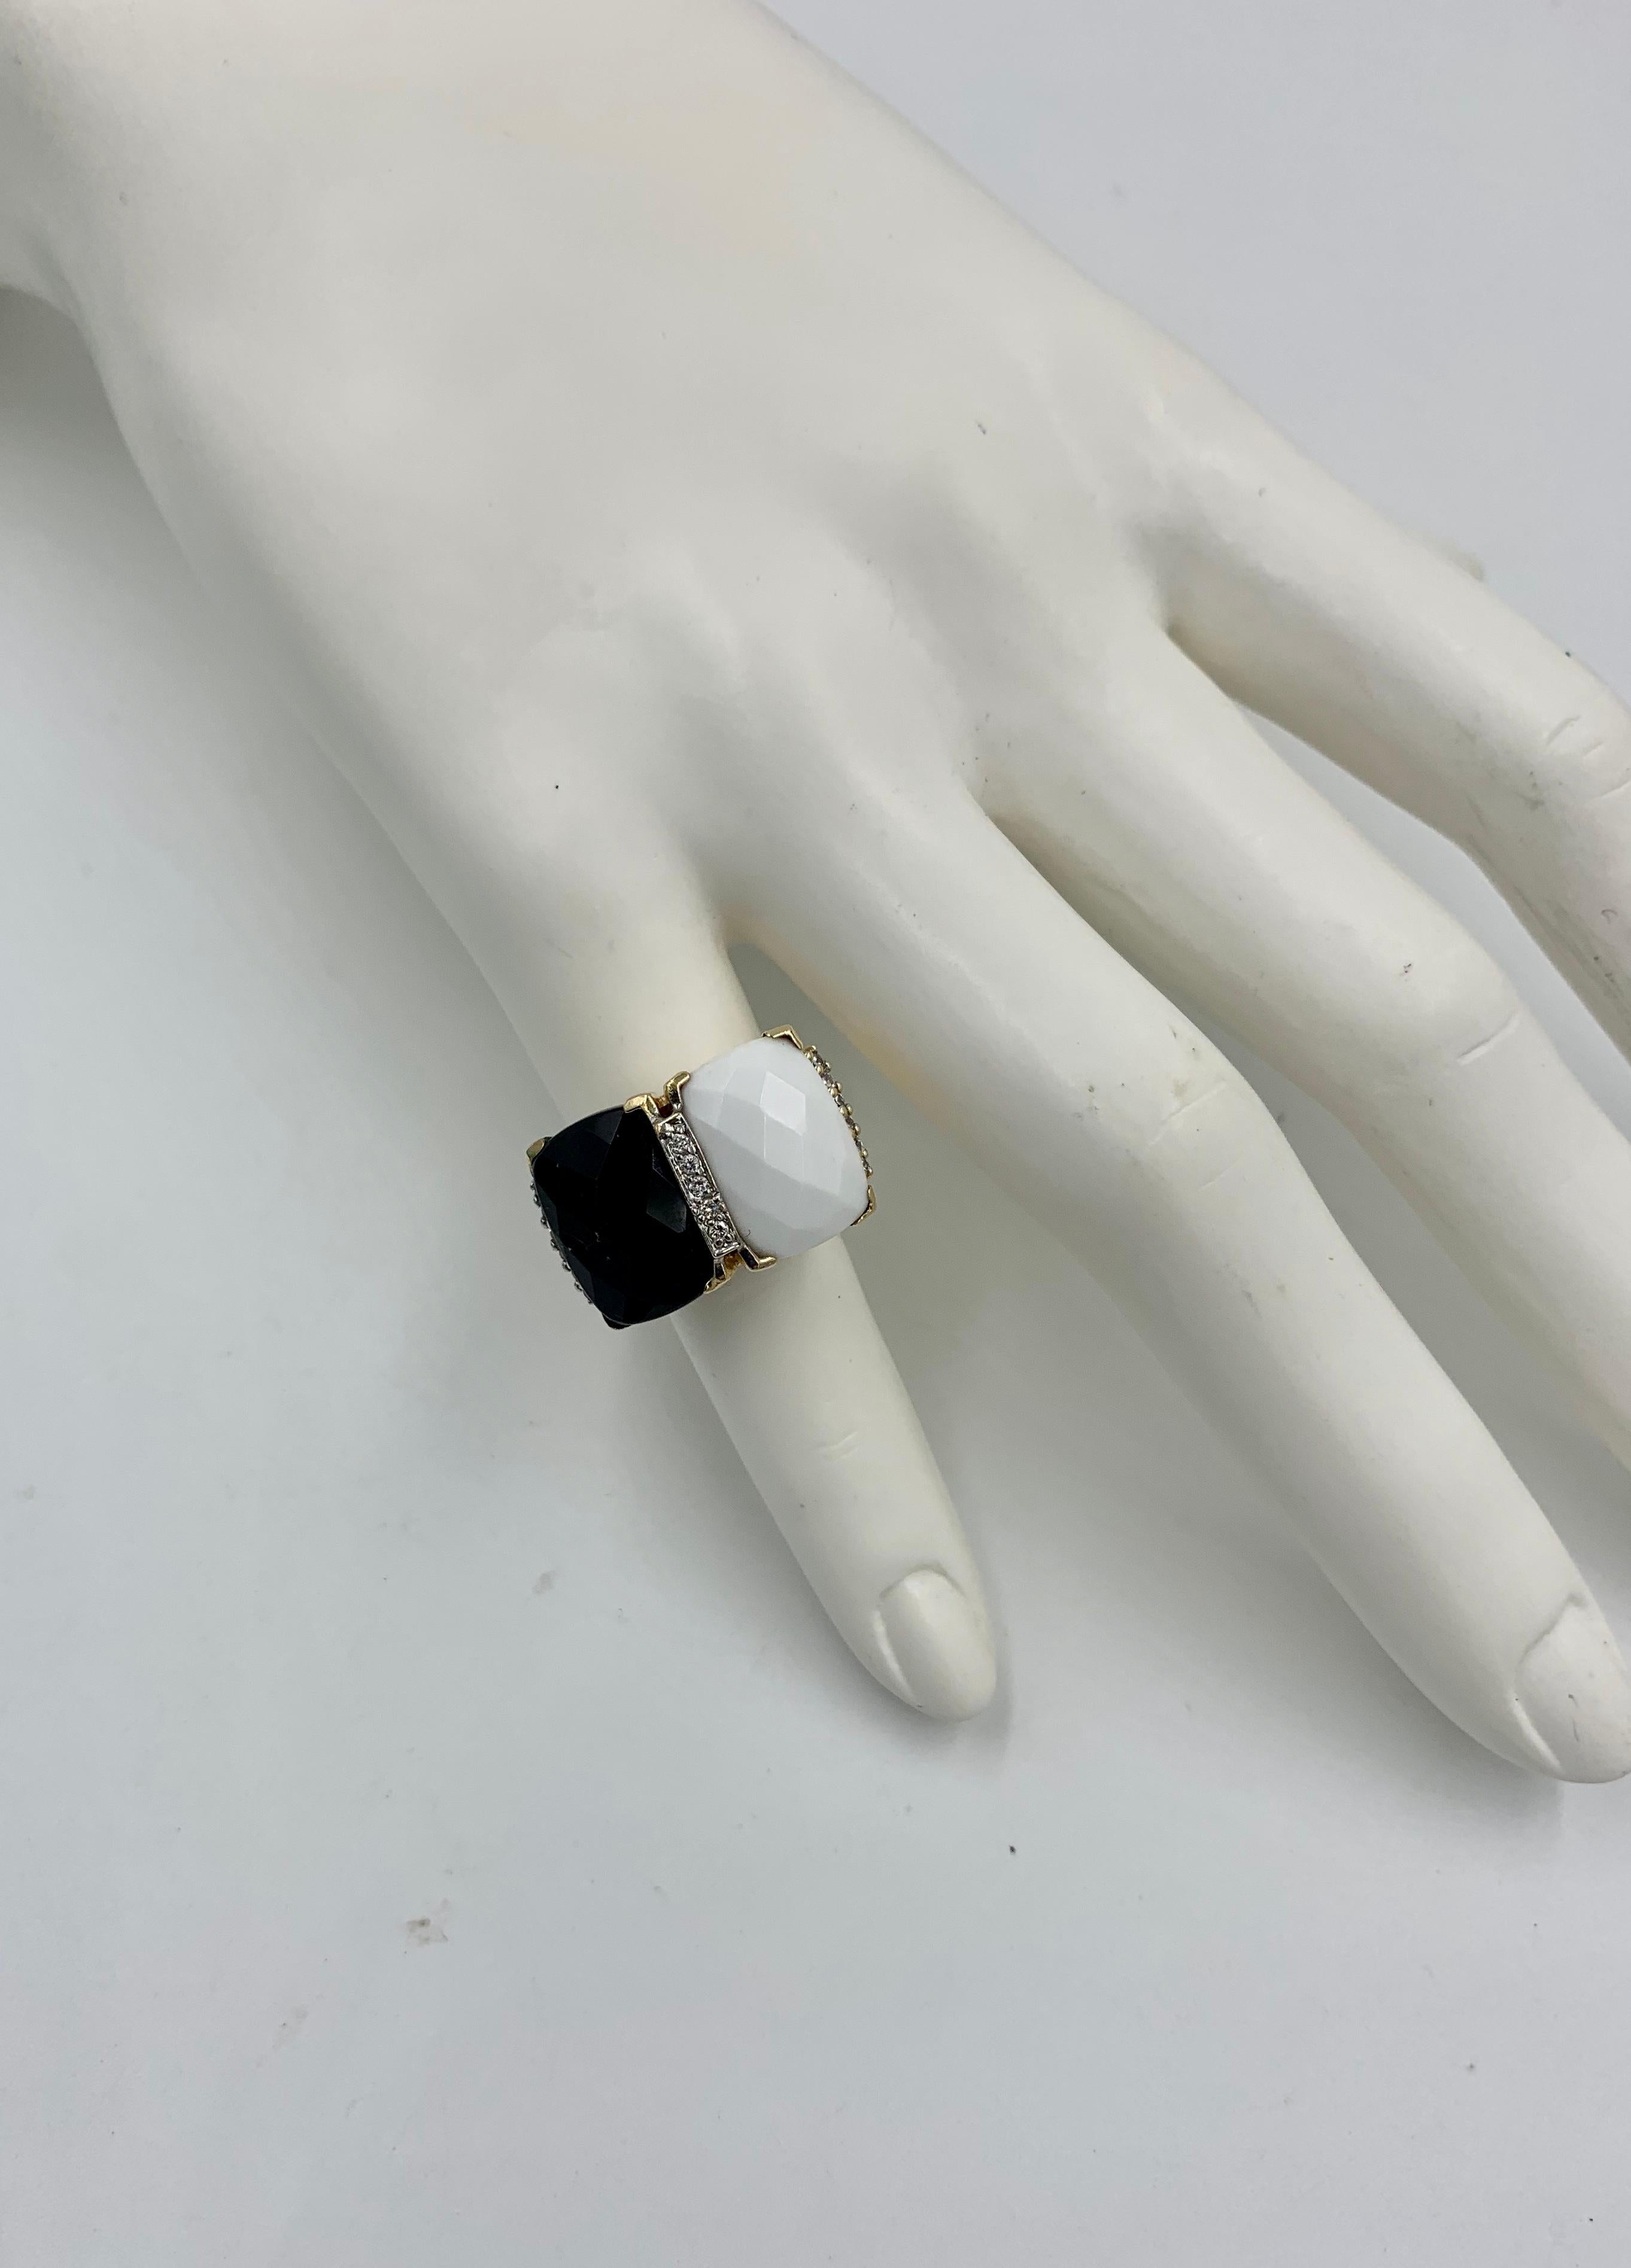 Ein klassischer Retro-Ring mit Edelsteinen aus schwarzem Onyx und weißem Onyx im Schachbrettschliff.   Der lebhafte Onyx wird von 15 funkelnden weißen Diamanten akzentuiert.  Ich liebe das dramatische Schwarz und Weiß des Onyx zusammen mit den